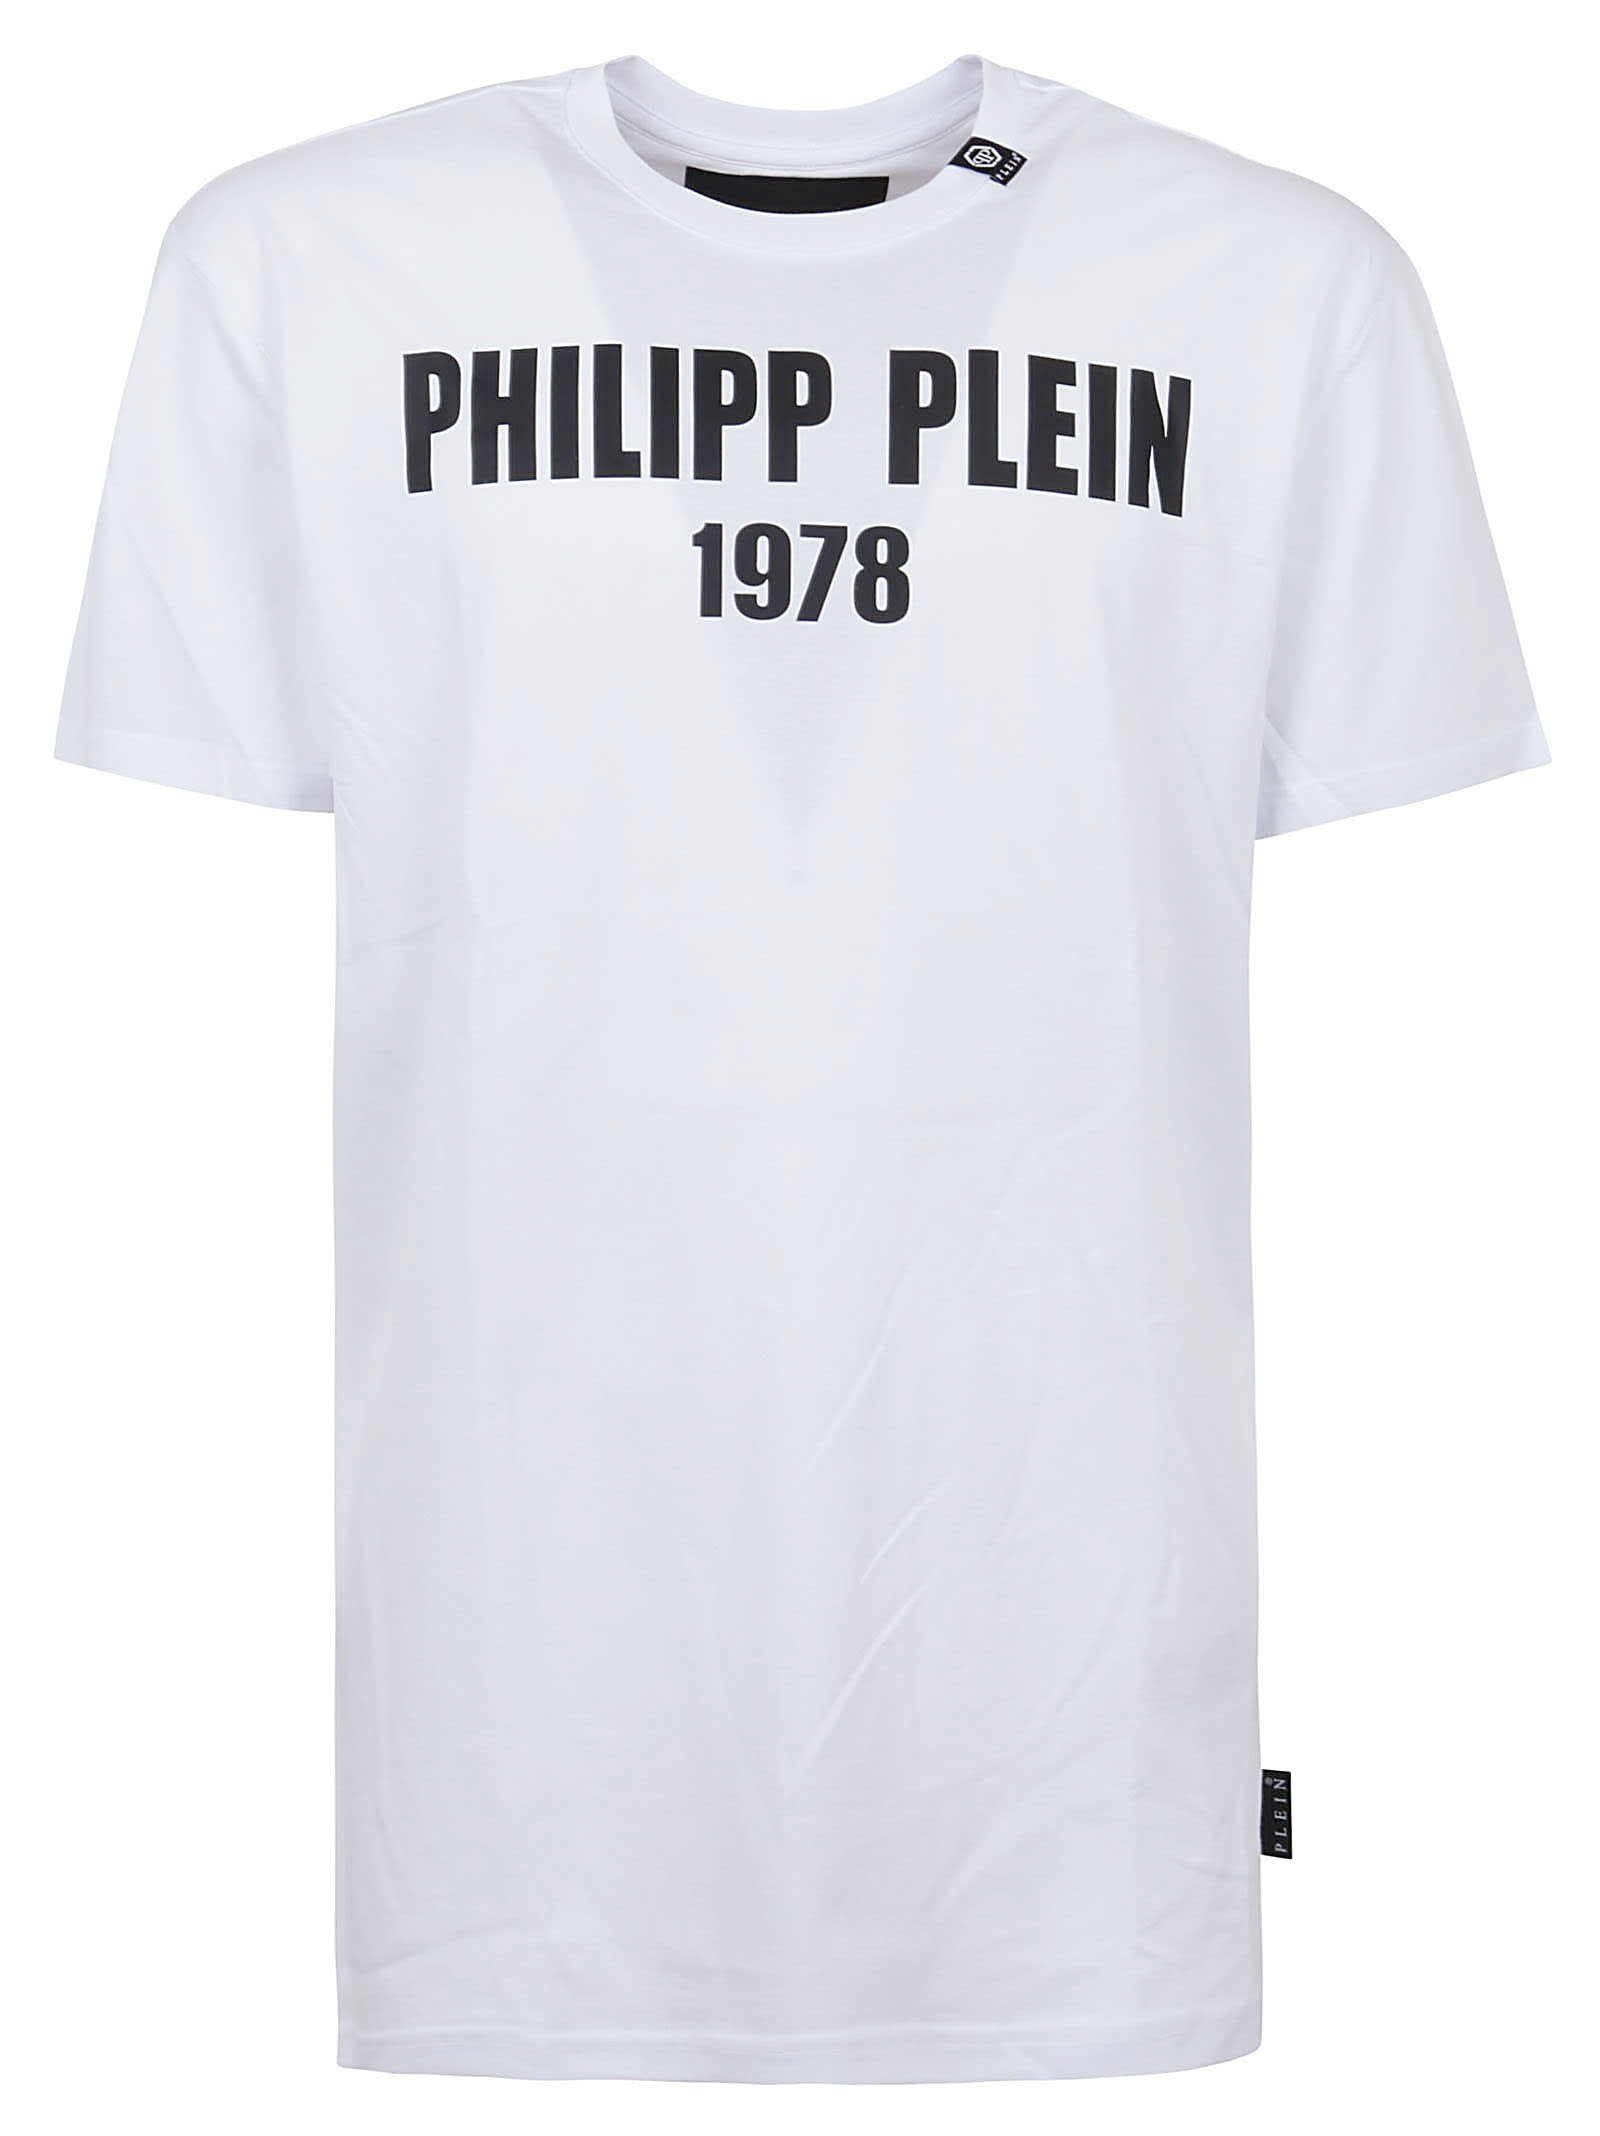 Philipp Plein T-shirt Round Neck Ss Pp1978